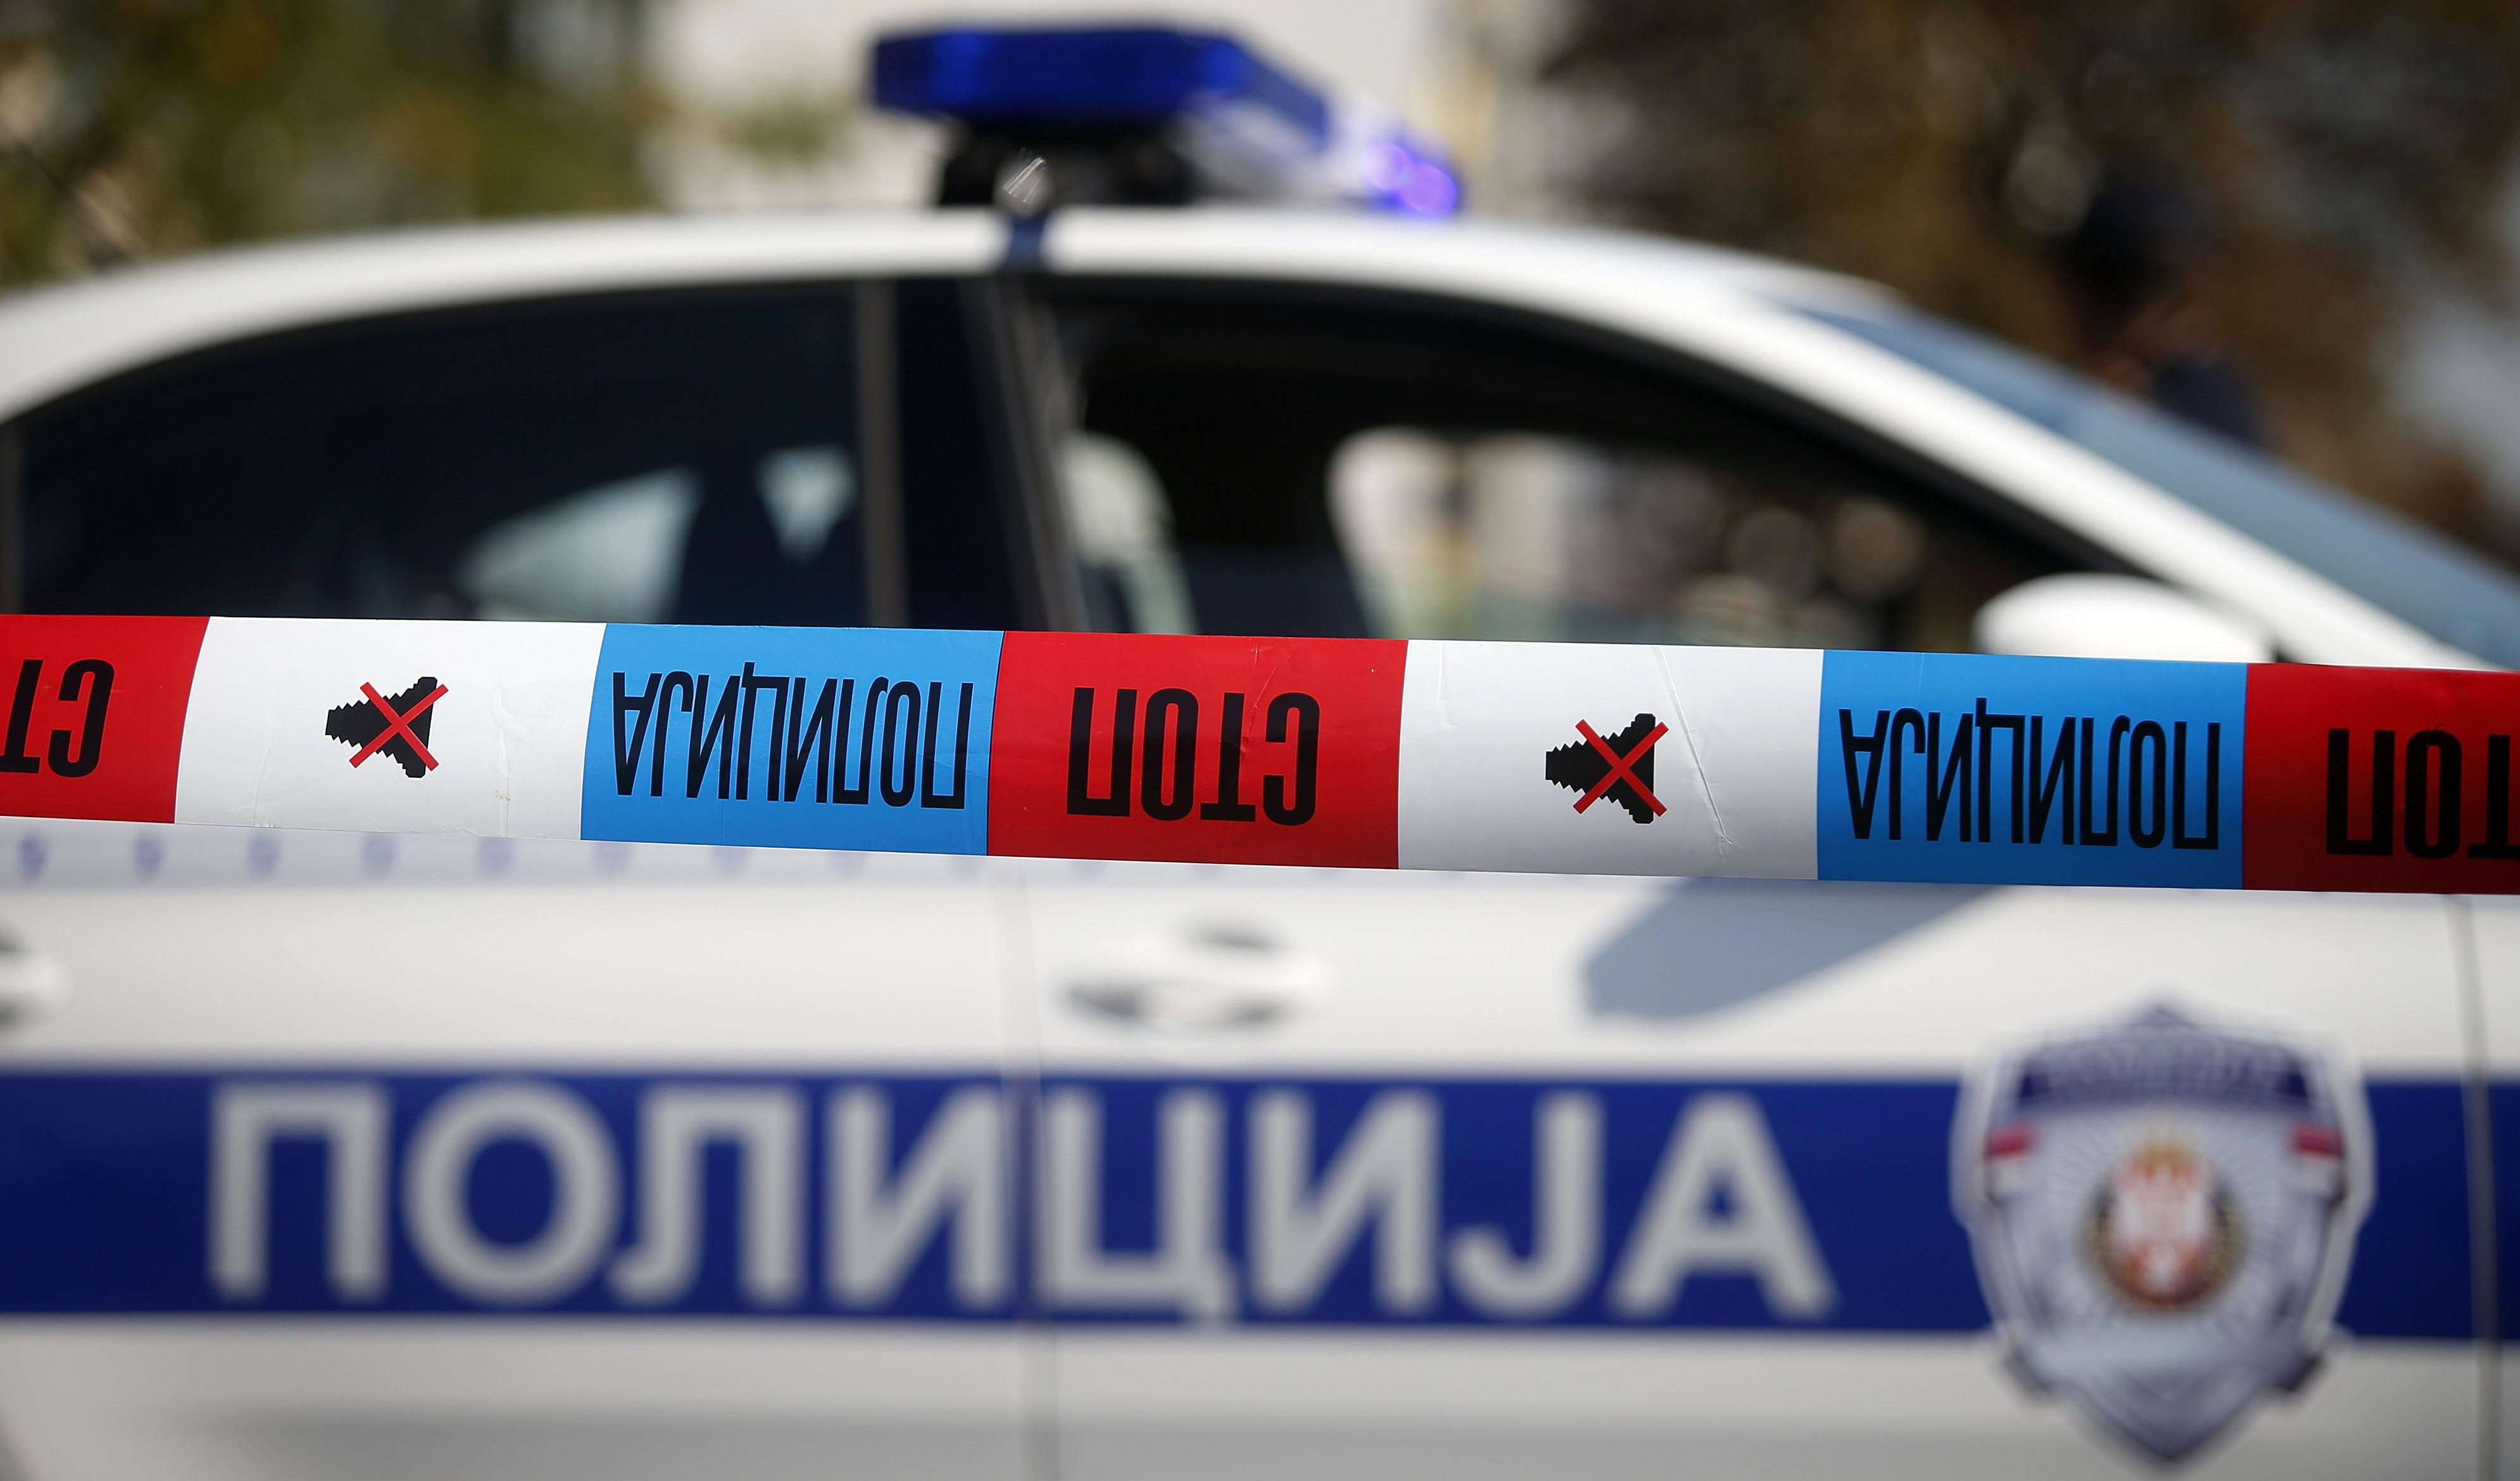 ŠEST MESECI KUĆNOG PRITVORA ZA NAPAD NA POLICAJCA: Silić (27) sklopio nagodbu i priznao krivicu